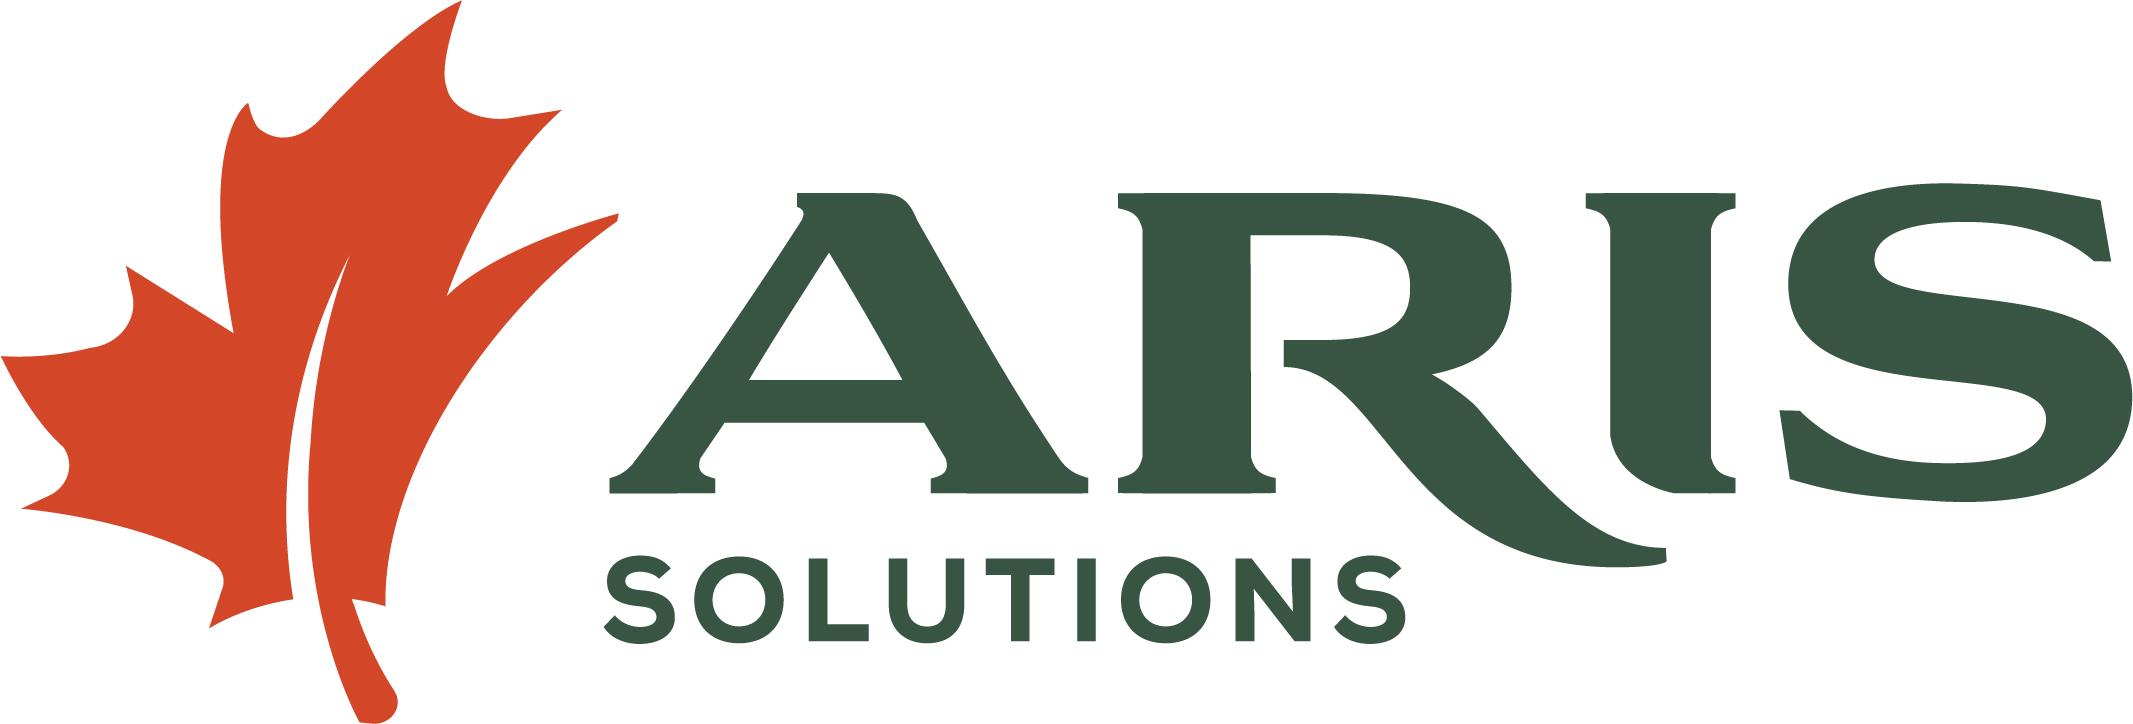 ARIS_Logo